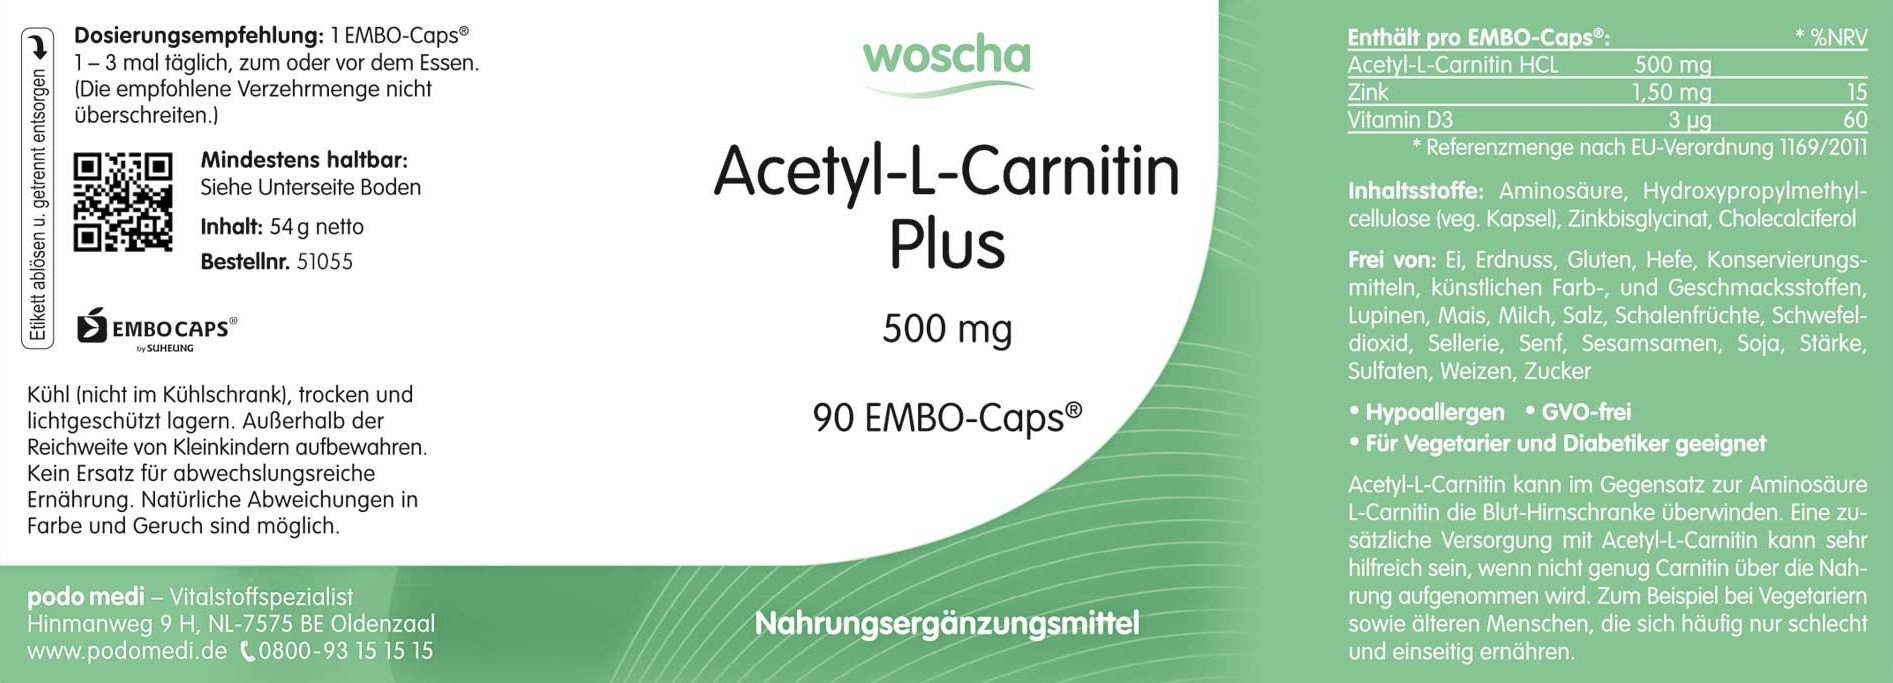 Woscha Acetyl-L-Carnitin Plus 500 mg von podo medi beinhaltet 90 EMBO-Caps Etikett